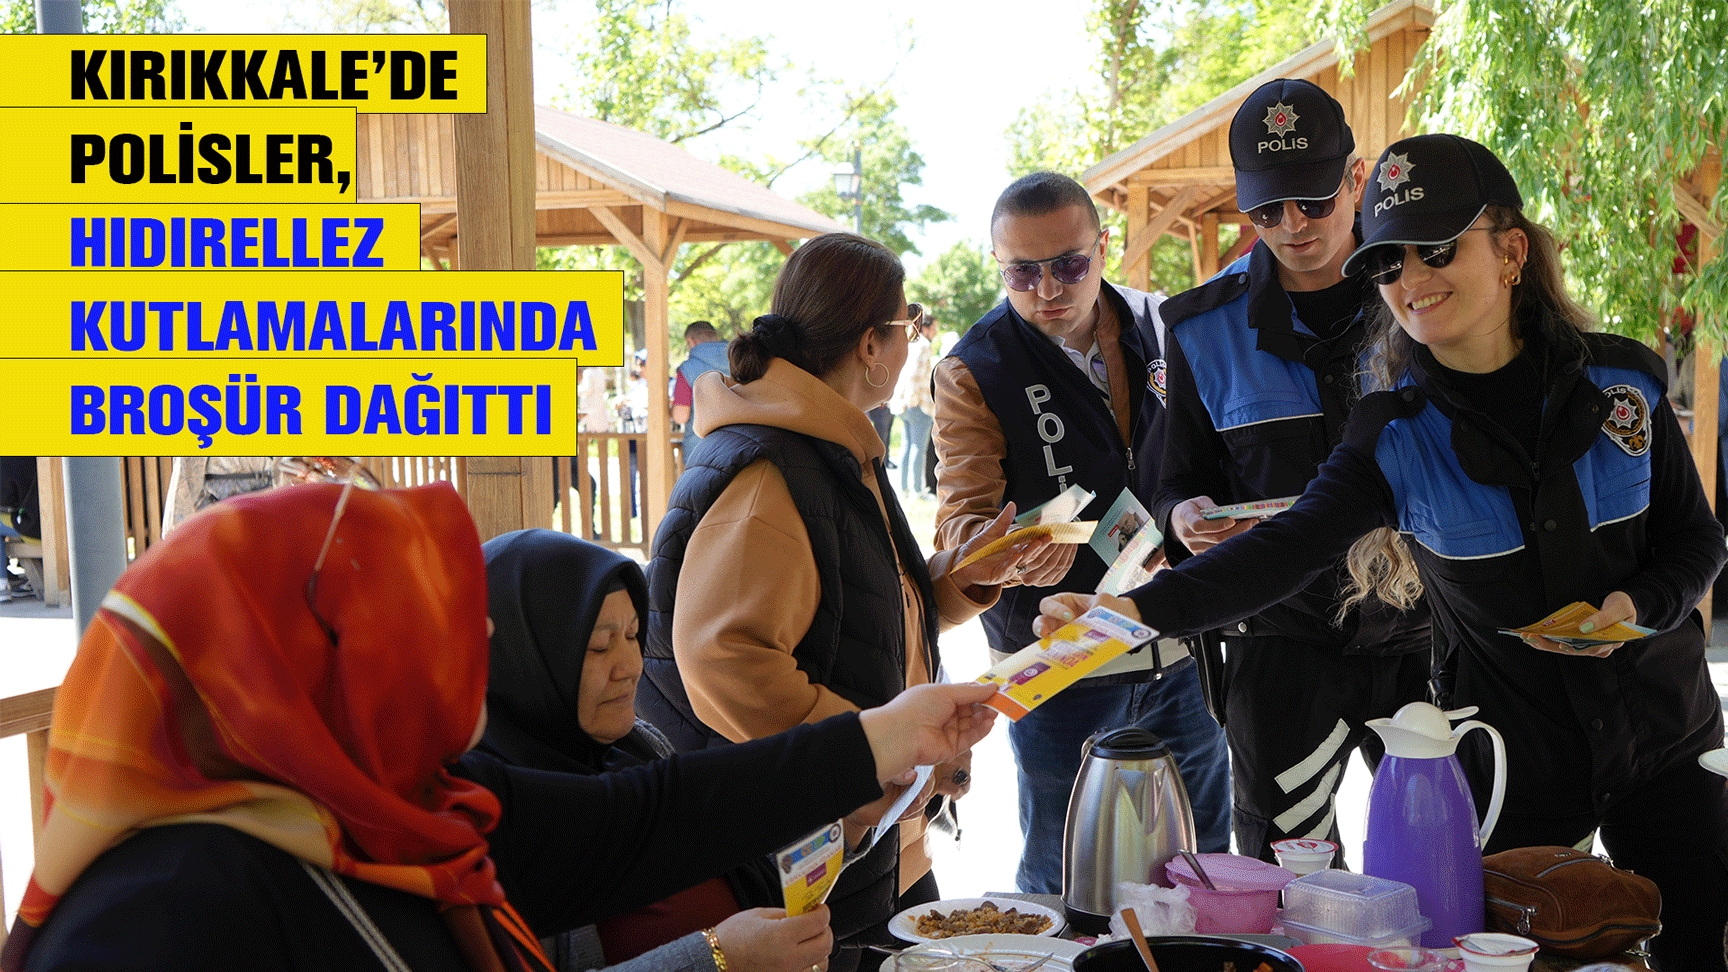 Kırıkkale’de polisler, Hıdırellez kutlamalarında broşür dağıttı